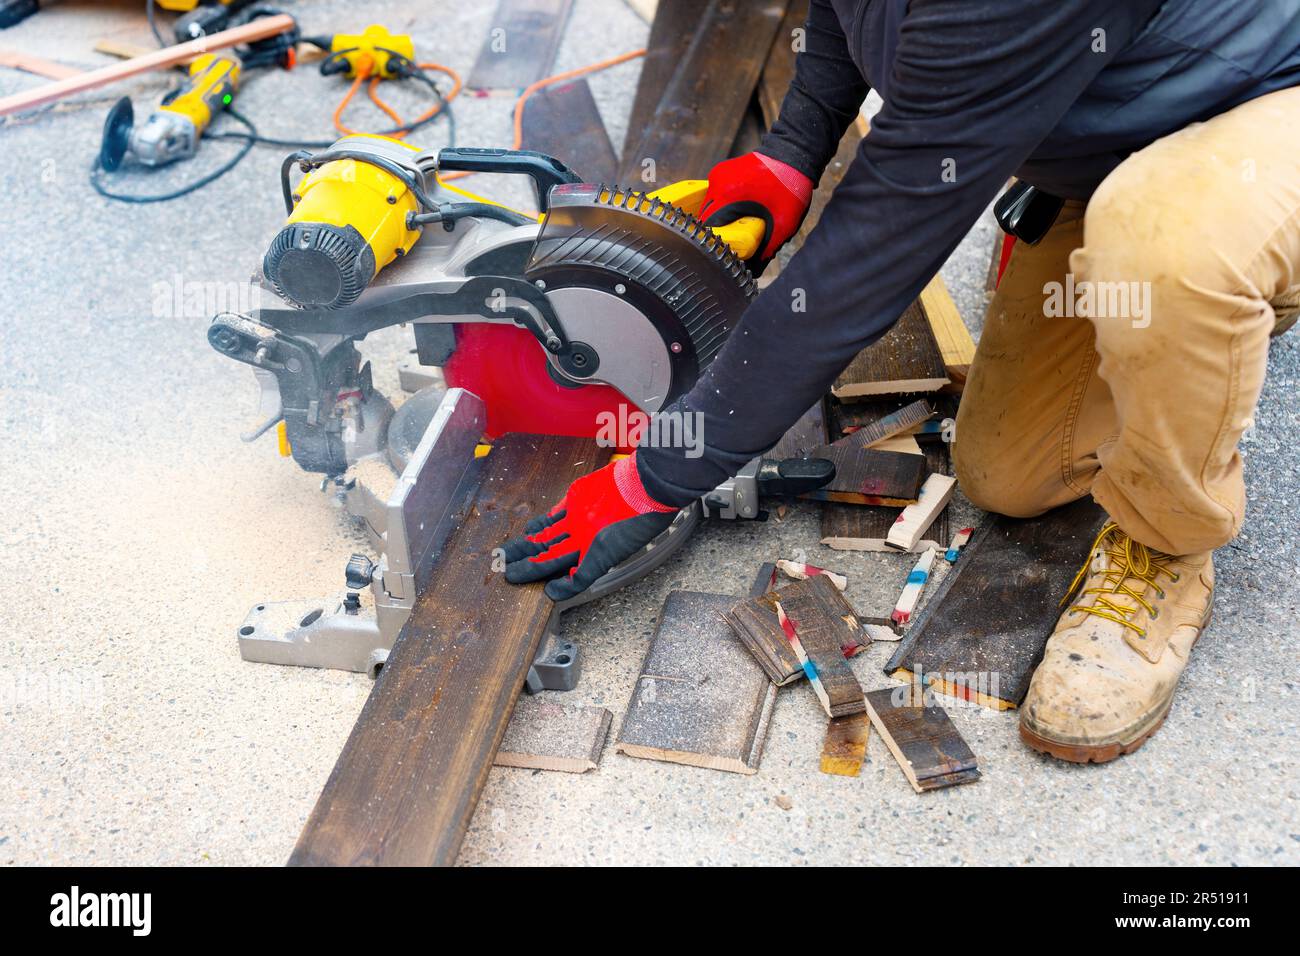 Un travailleur qualifié utilise une scie à onglet composée coulissante pour couper les revêtements de sol en bois sombre stratifiés à l'extérieur. Travail du bois, projets de bricolage, ou rénovation de la maison ba Banque D'Images